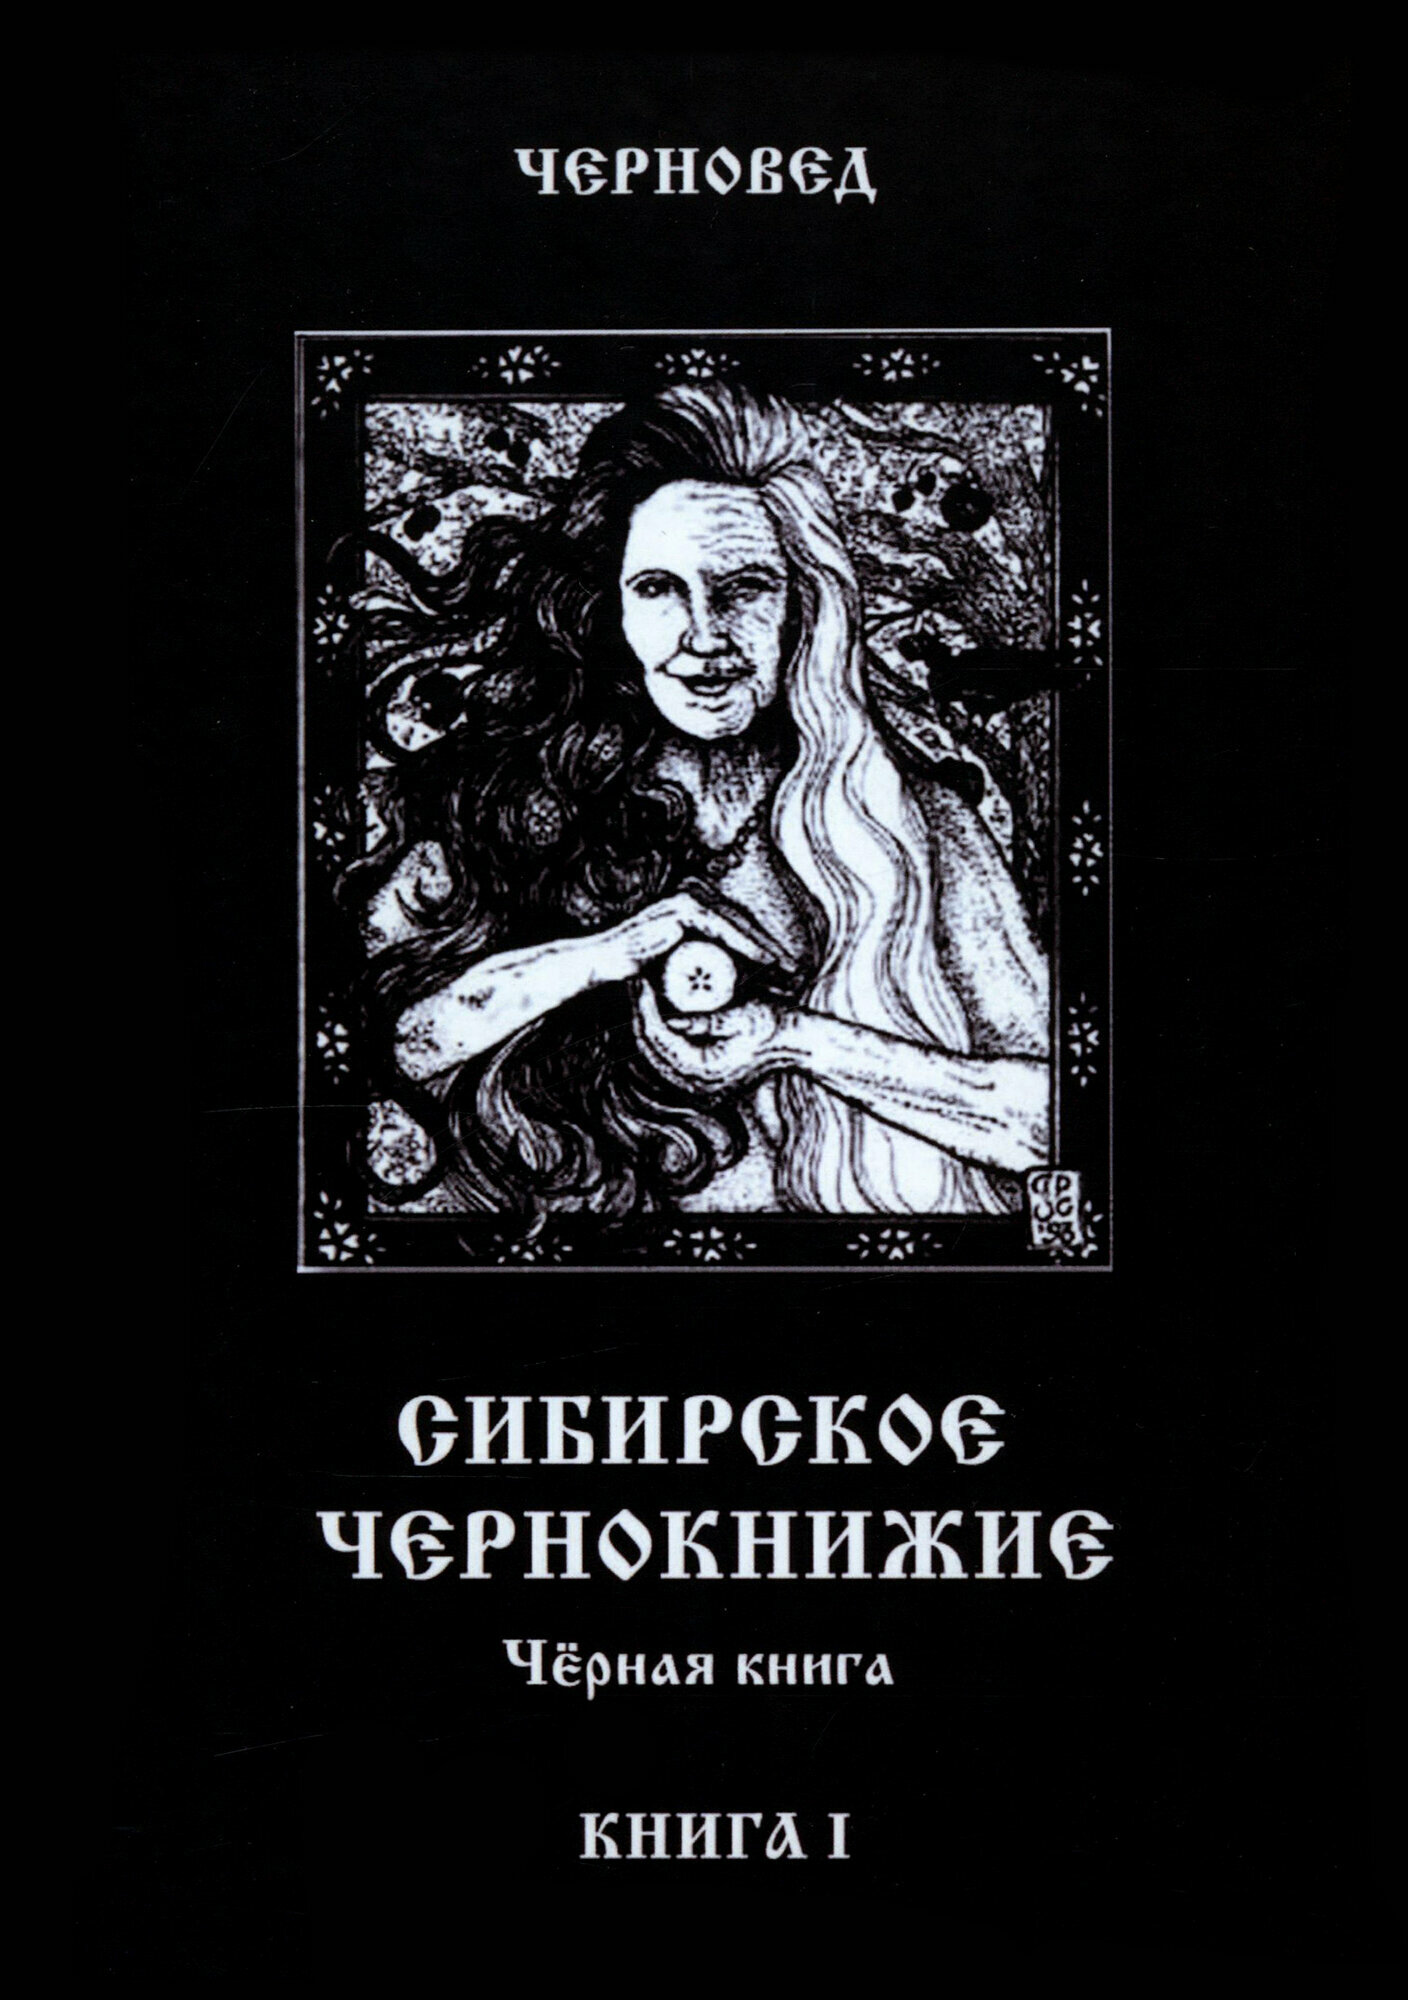 Сибирское чернокнижие. Черная книга. Книга I - фото №5